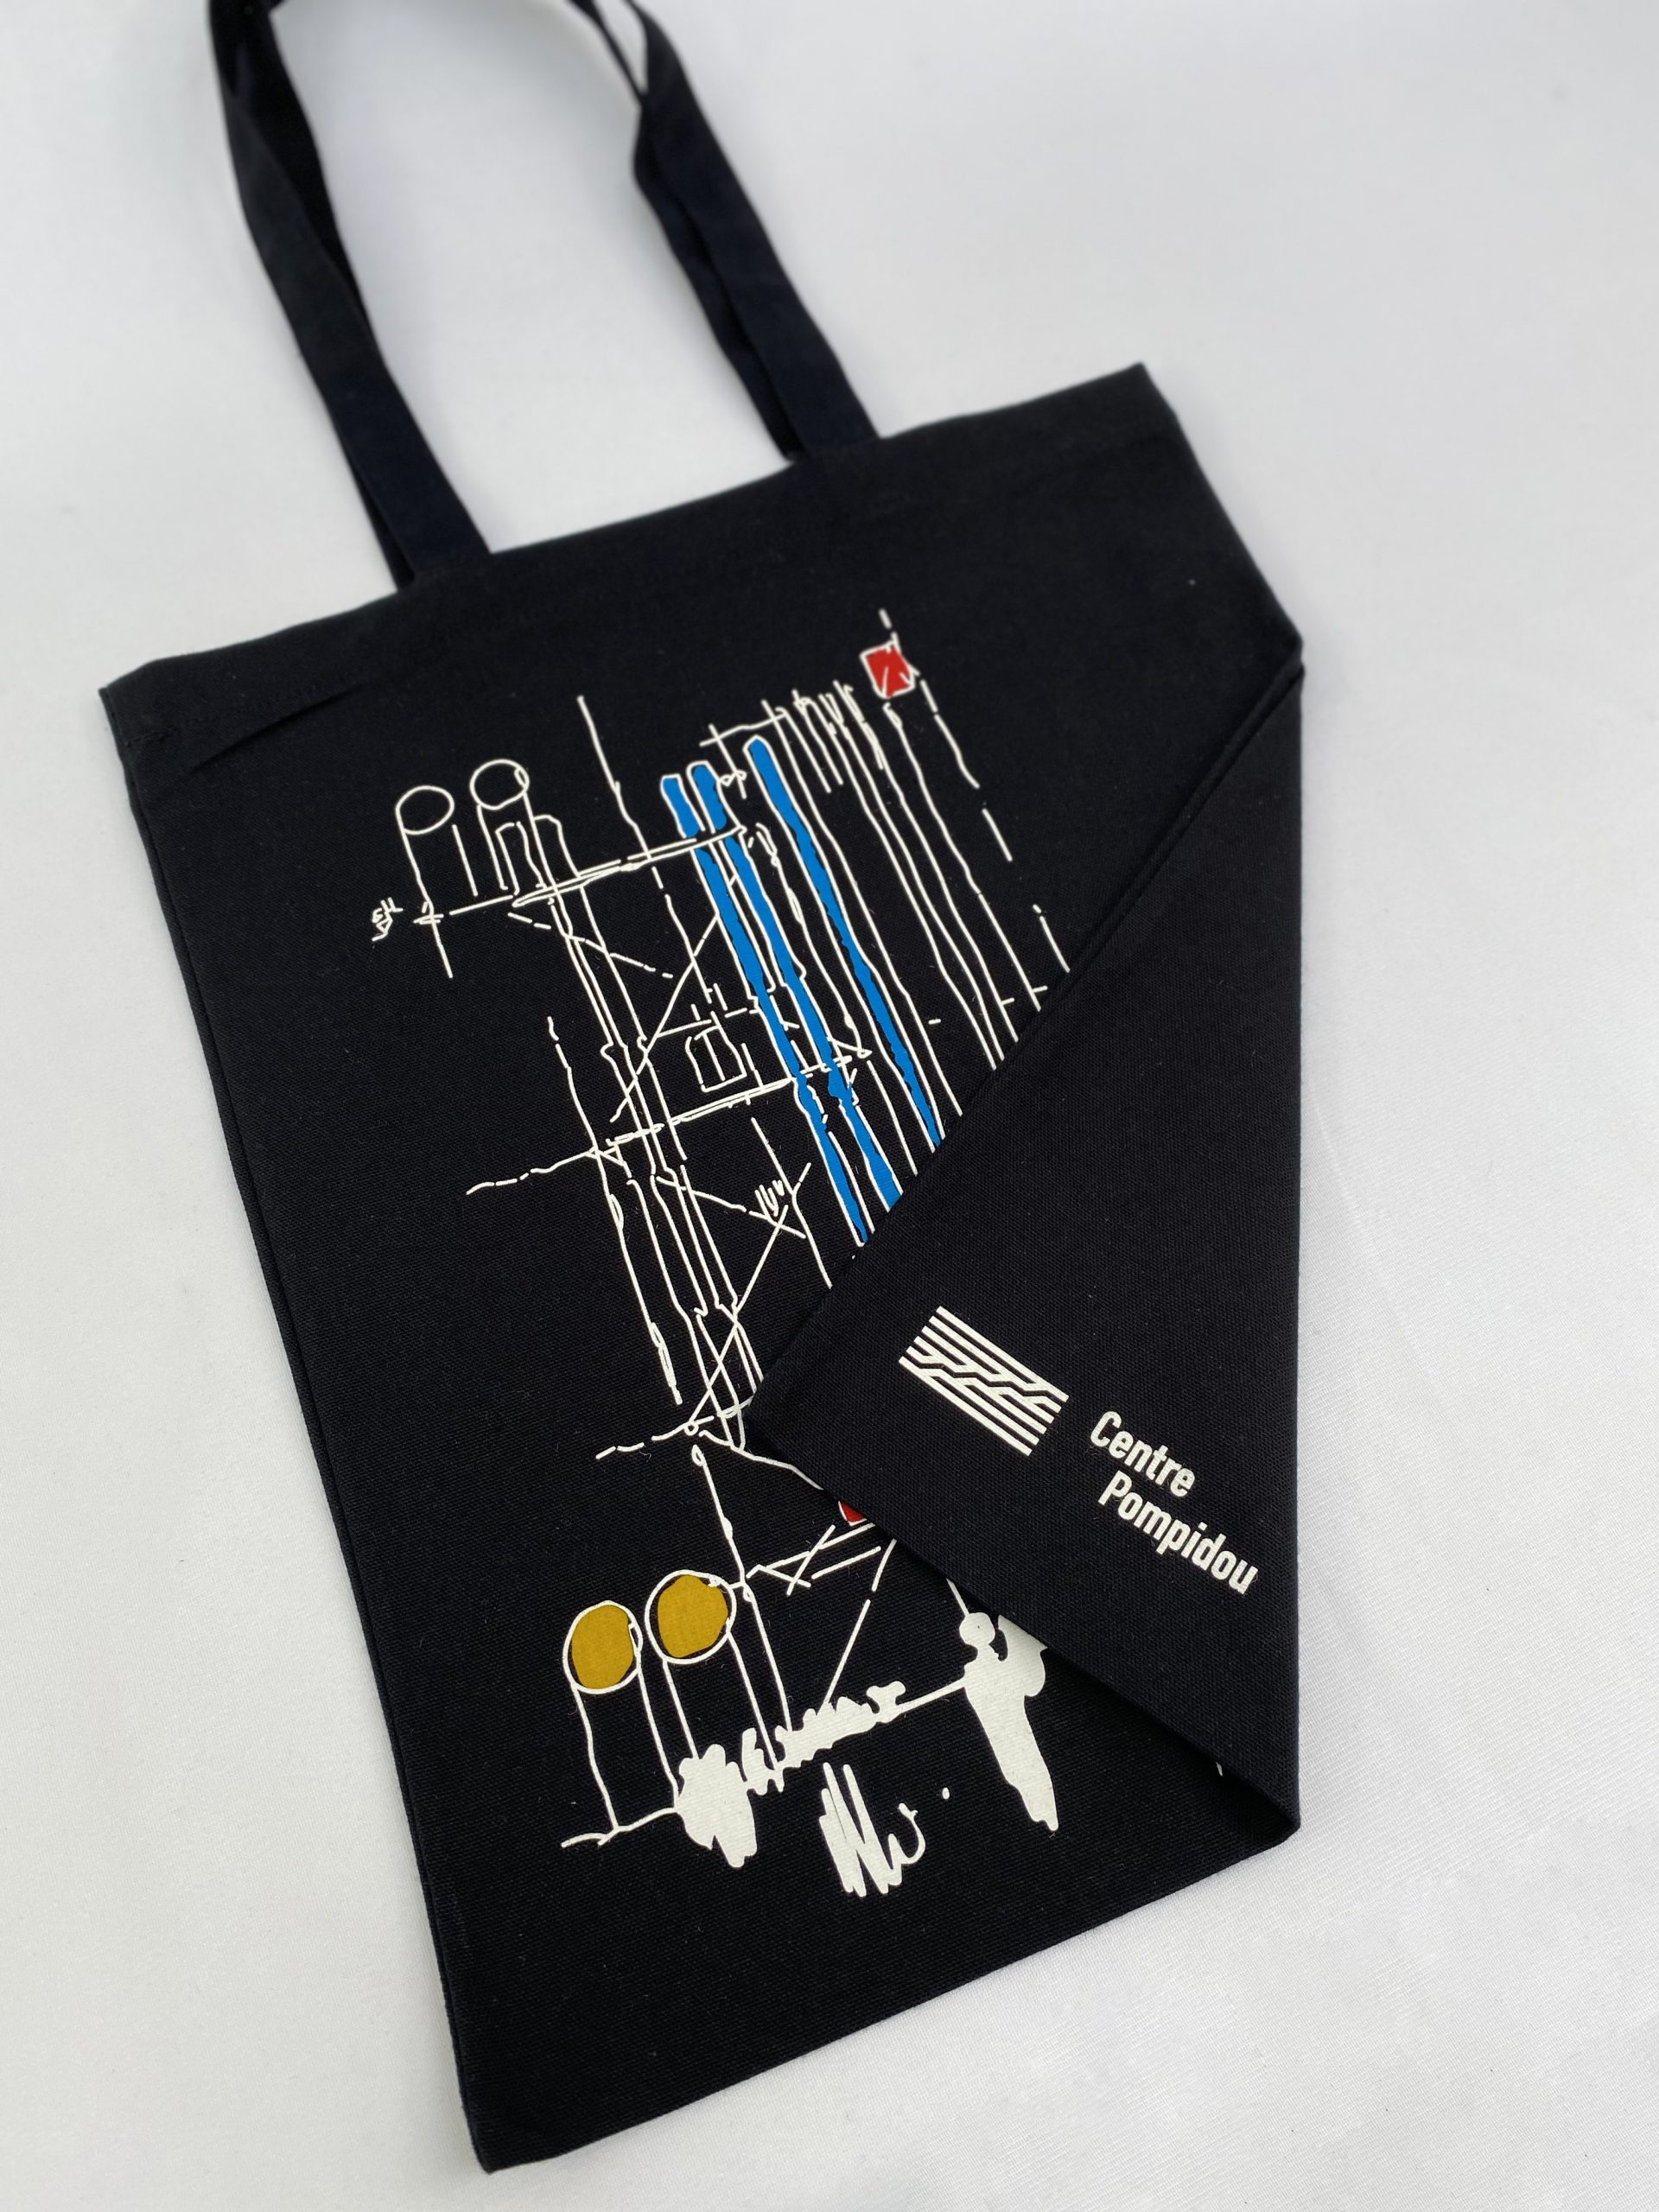 Centre Pompidou of Renzo Pianos printed tote bag